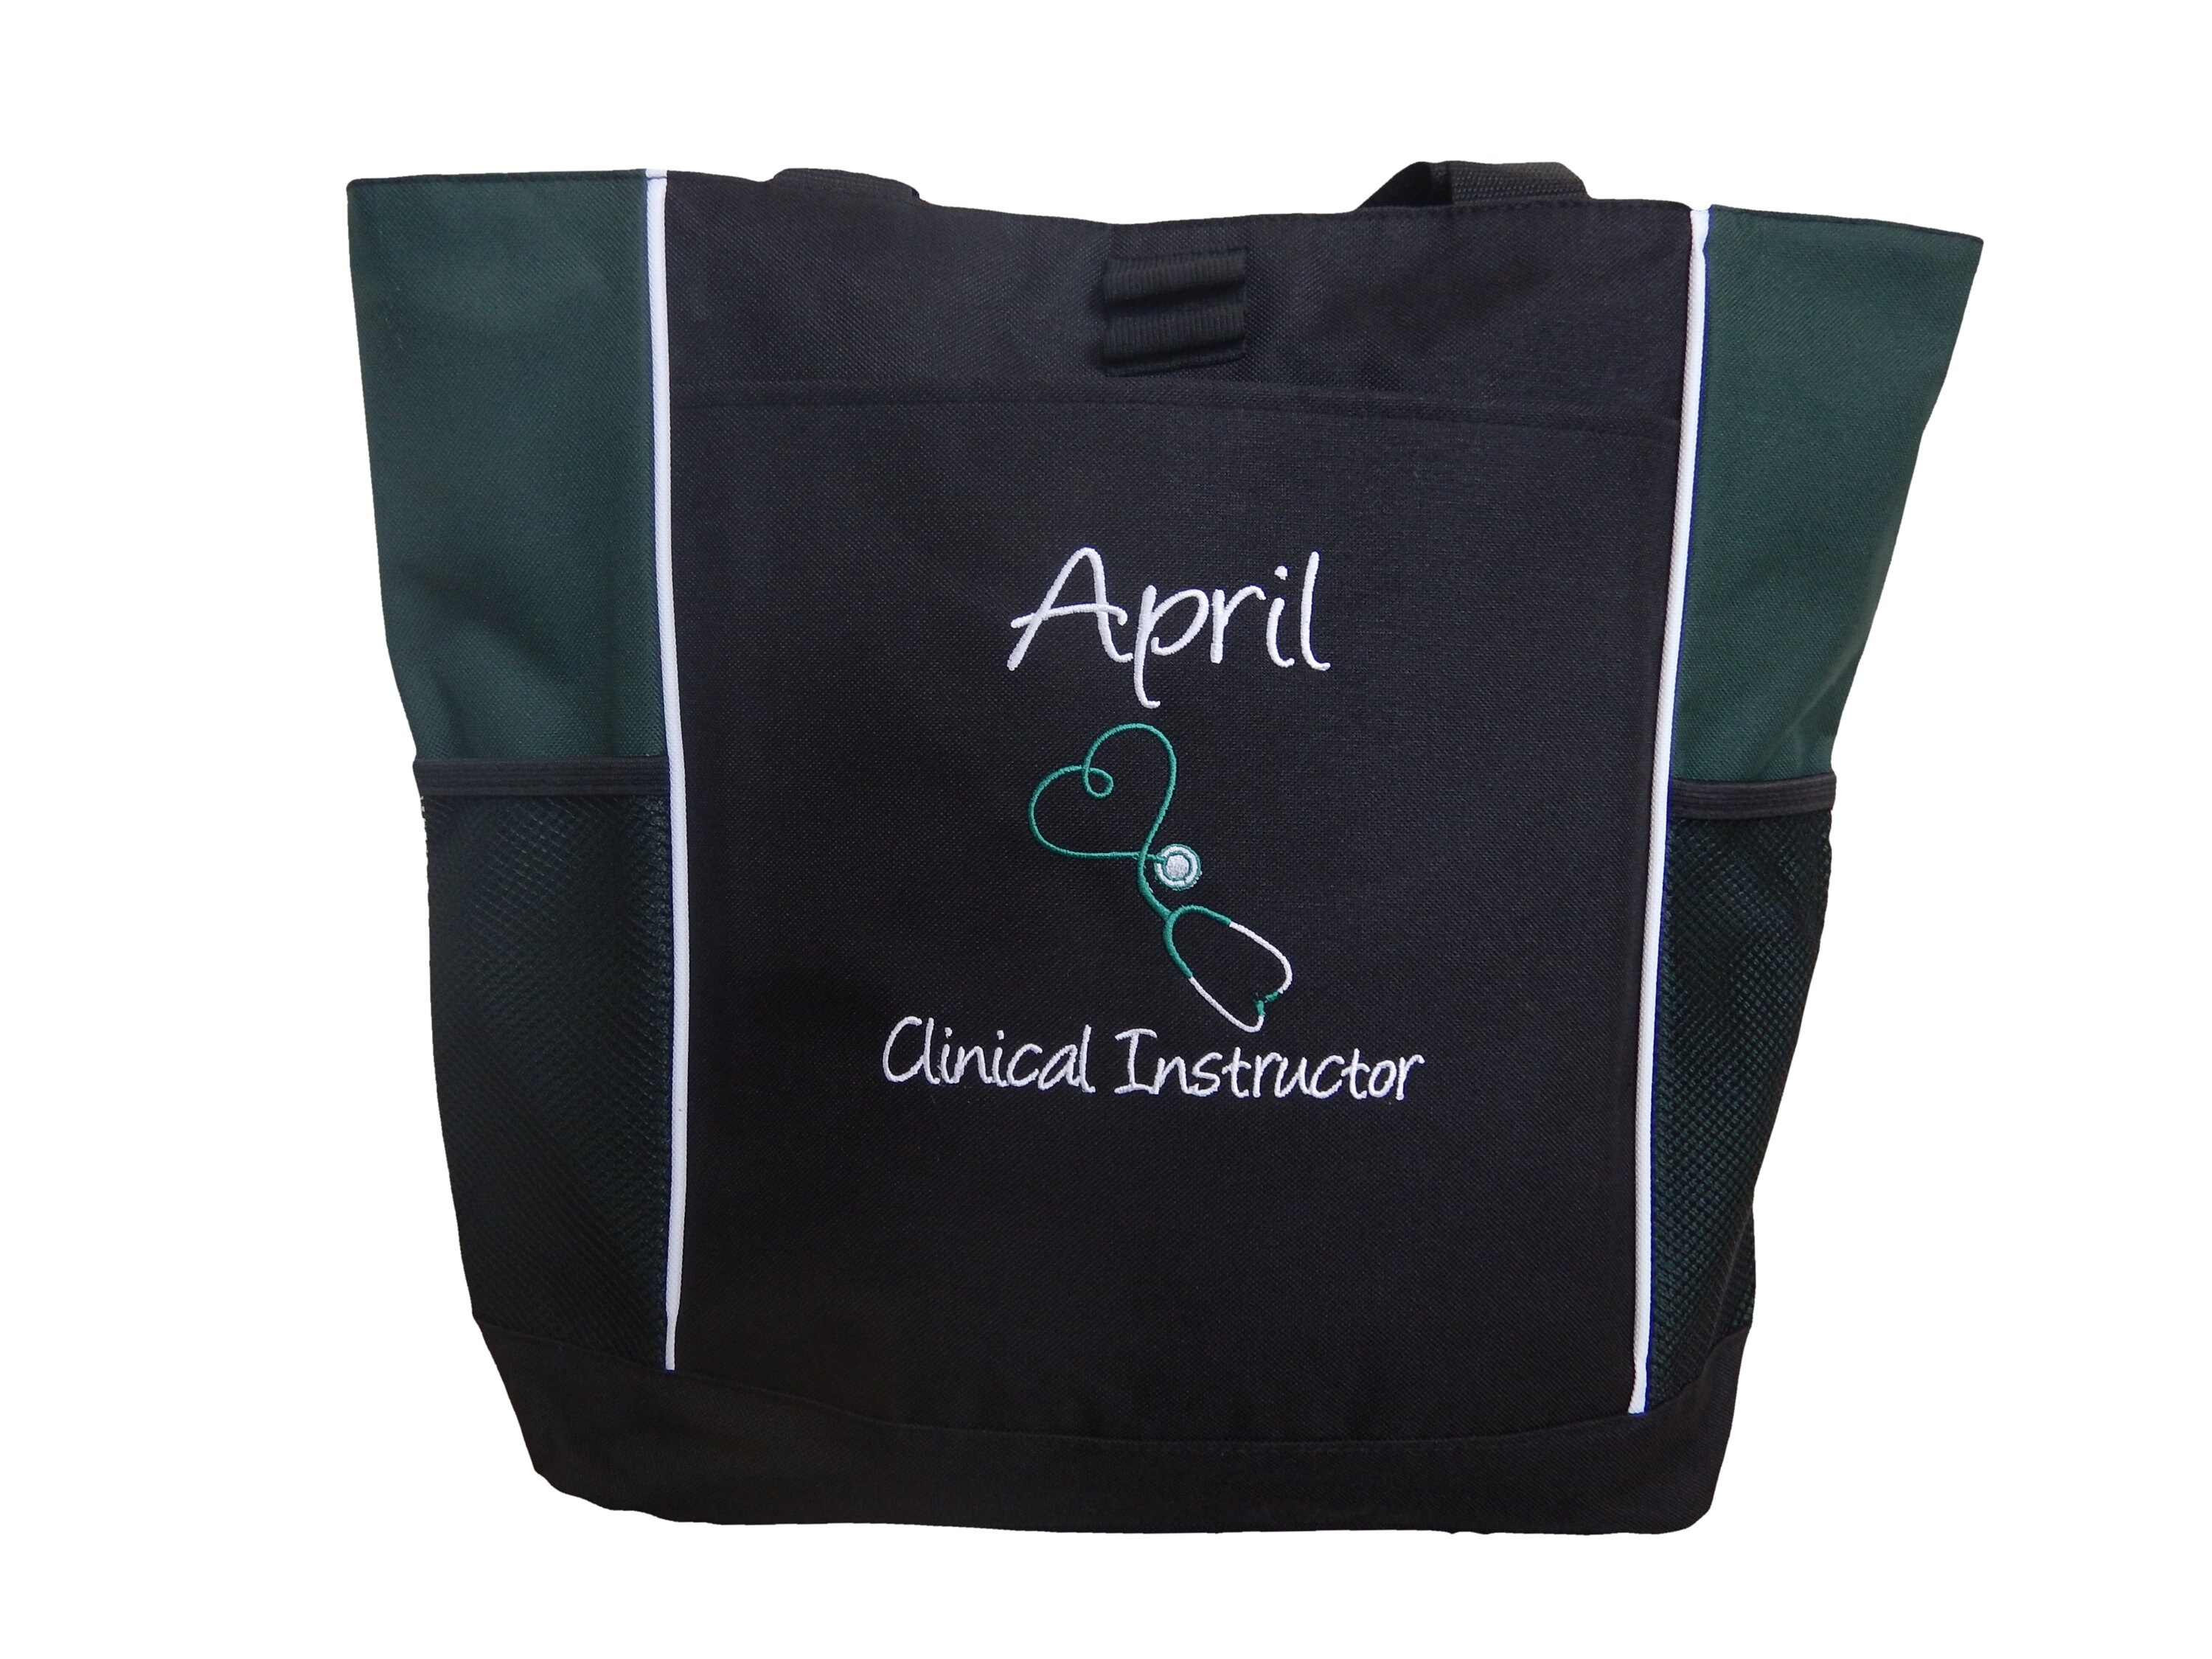 Bolsa de mano personalizada para enfermera, para trabajo, nombre  personalizado, bolso de hombro para enfermera, RN CNA LPN, regalos para  estudiantes